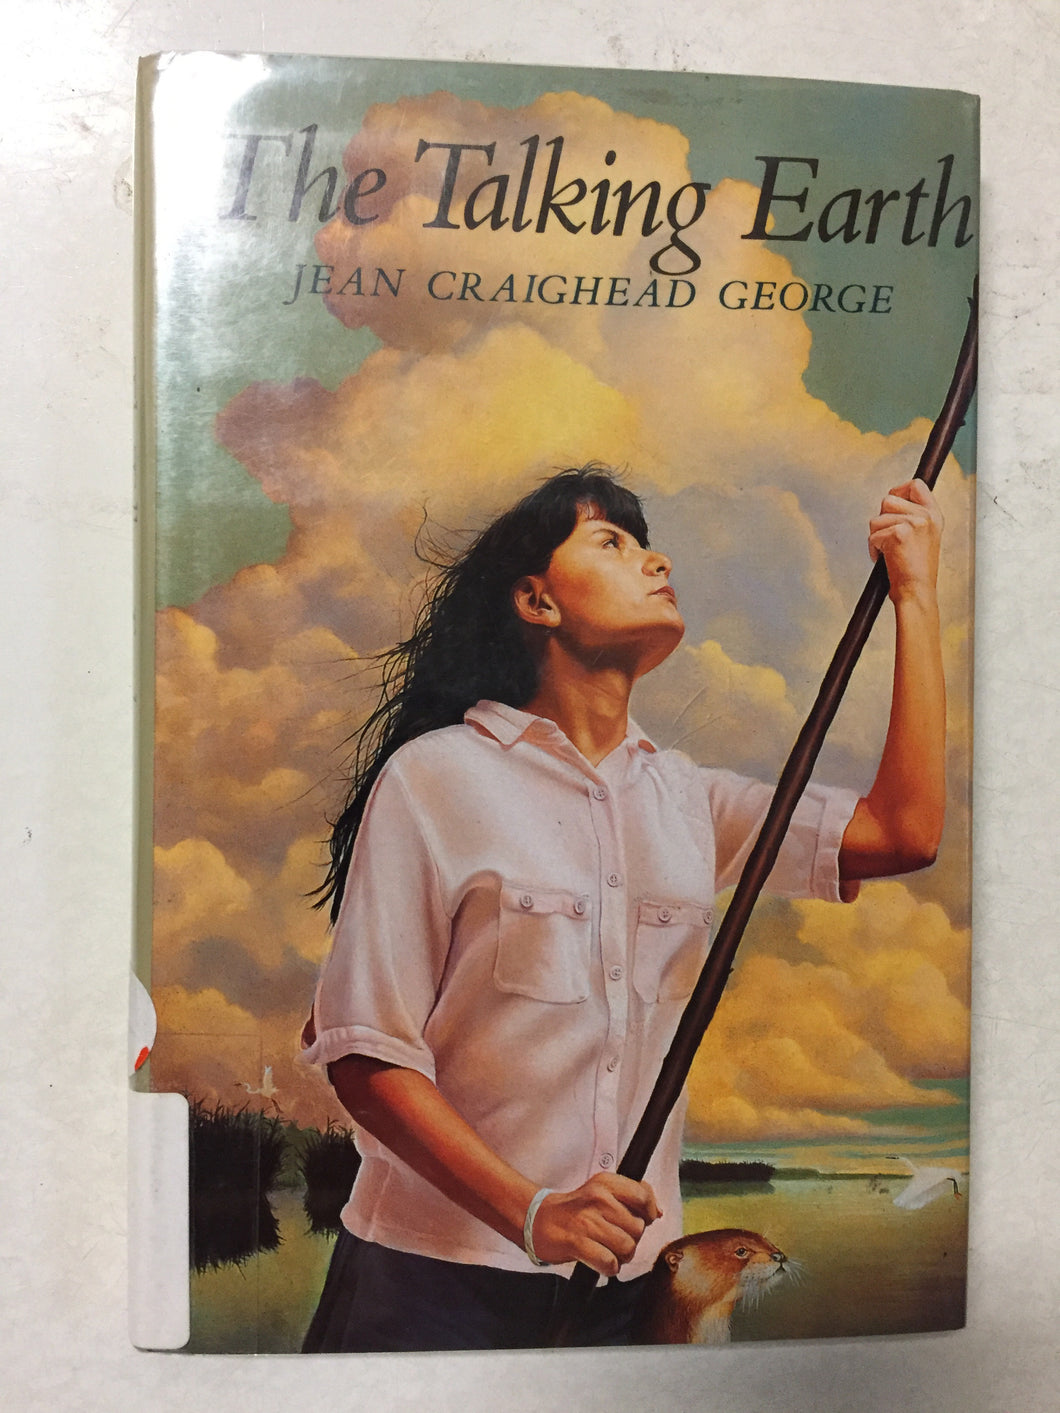 The Talking Earth - Slickcatbooks